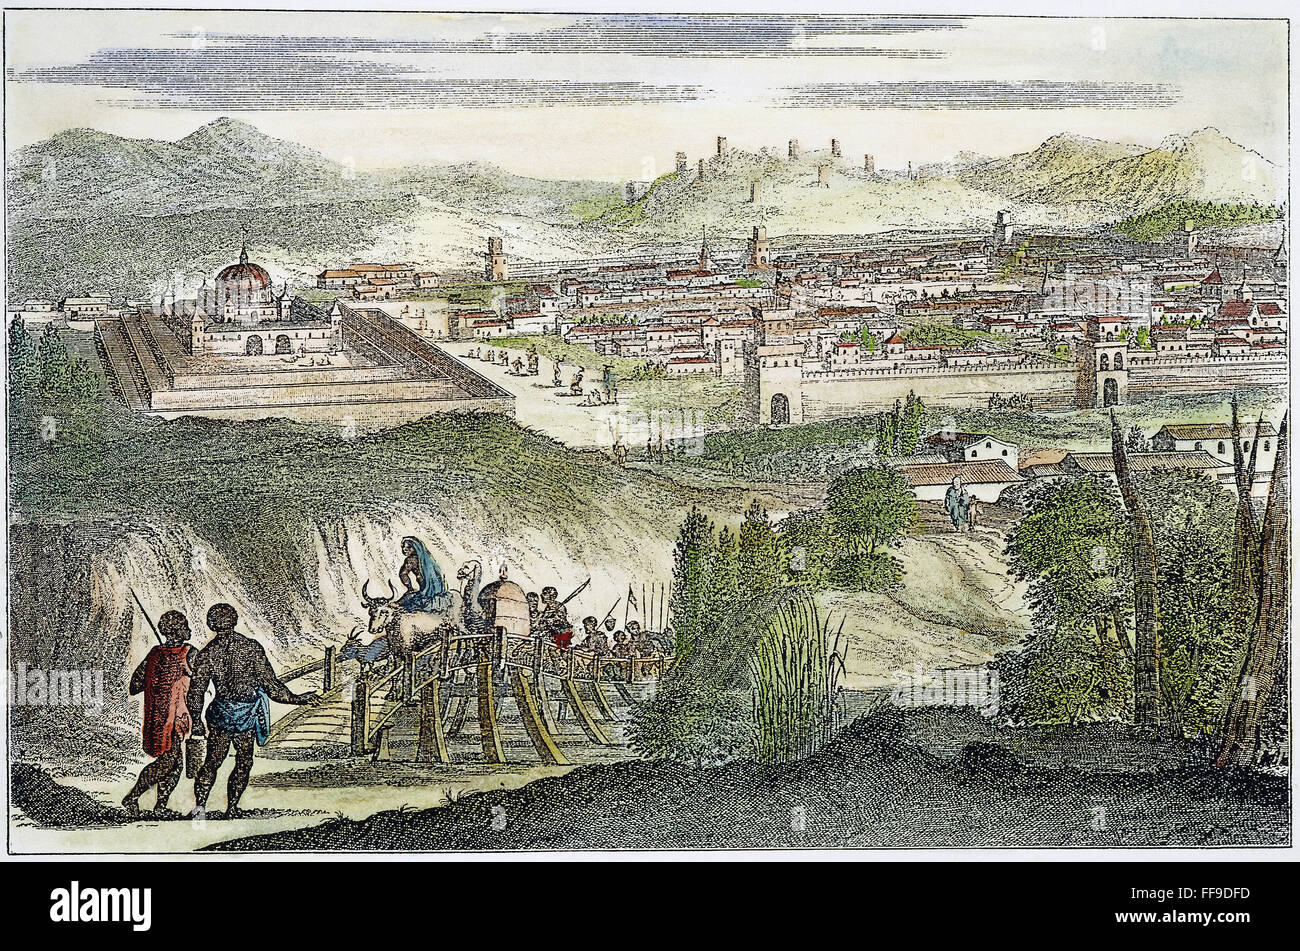 PERU: CUZCO, 1673. NUM-Ansicht von Cuzco, Peru. Kupfer, Gravur, 1673. Stockfoto